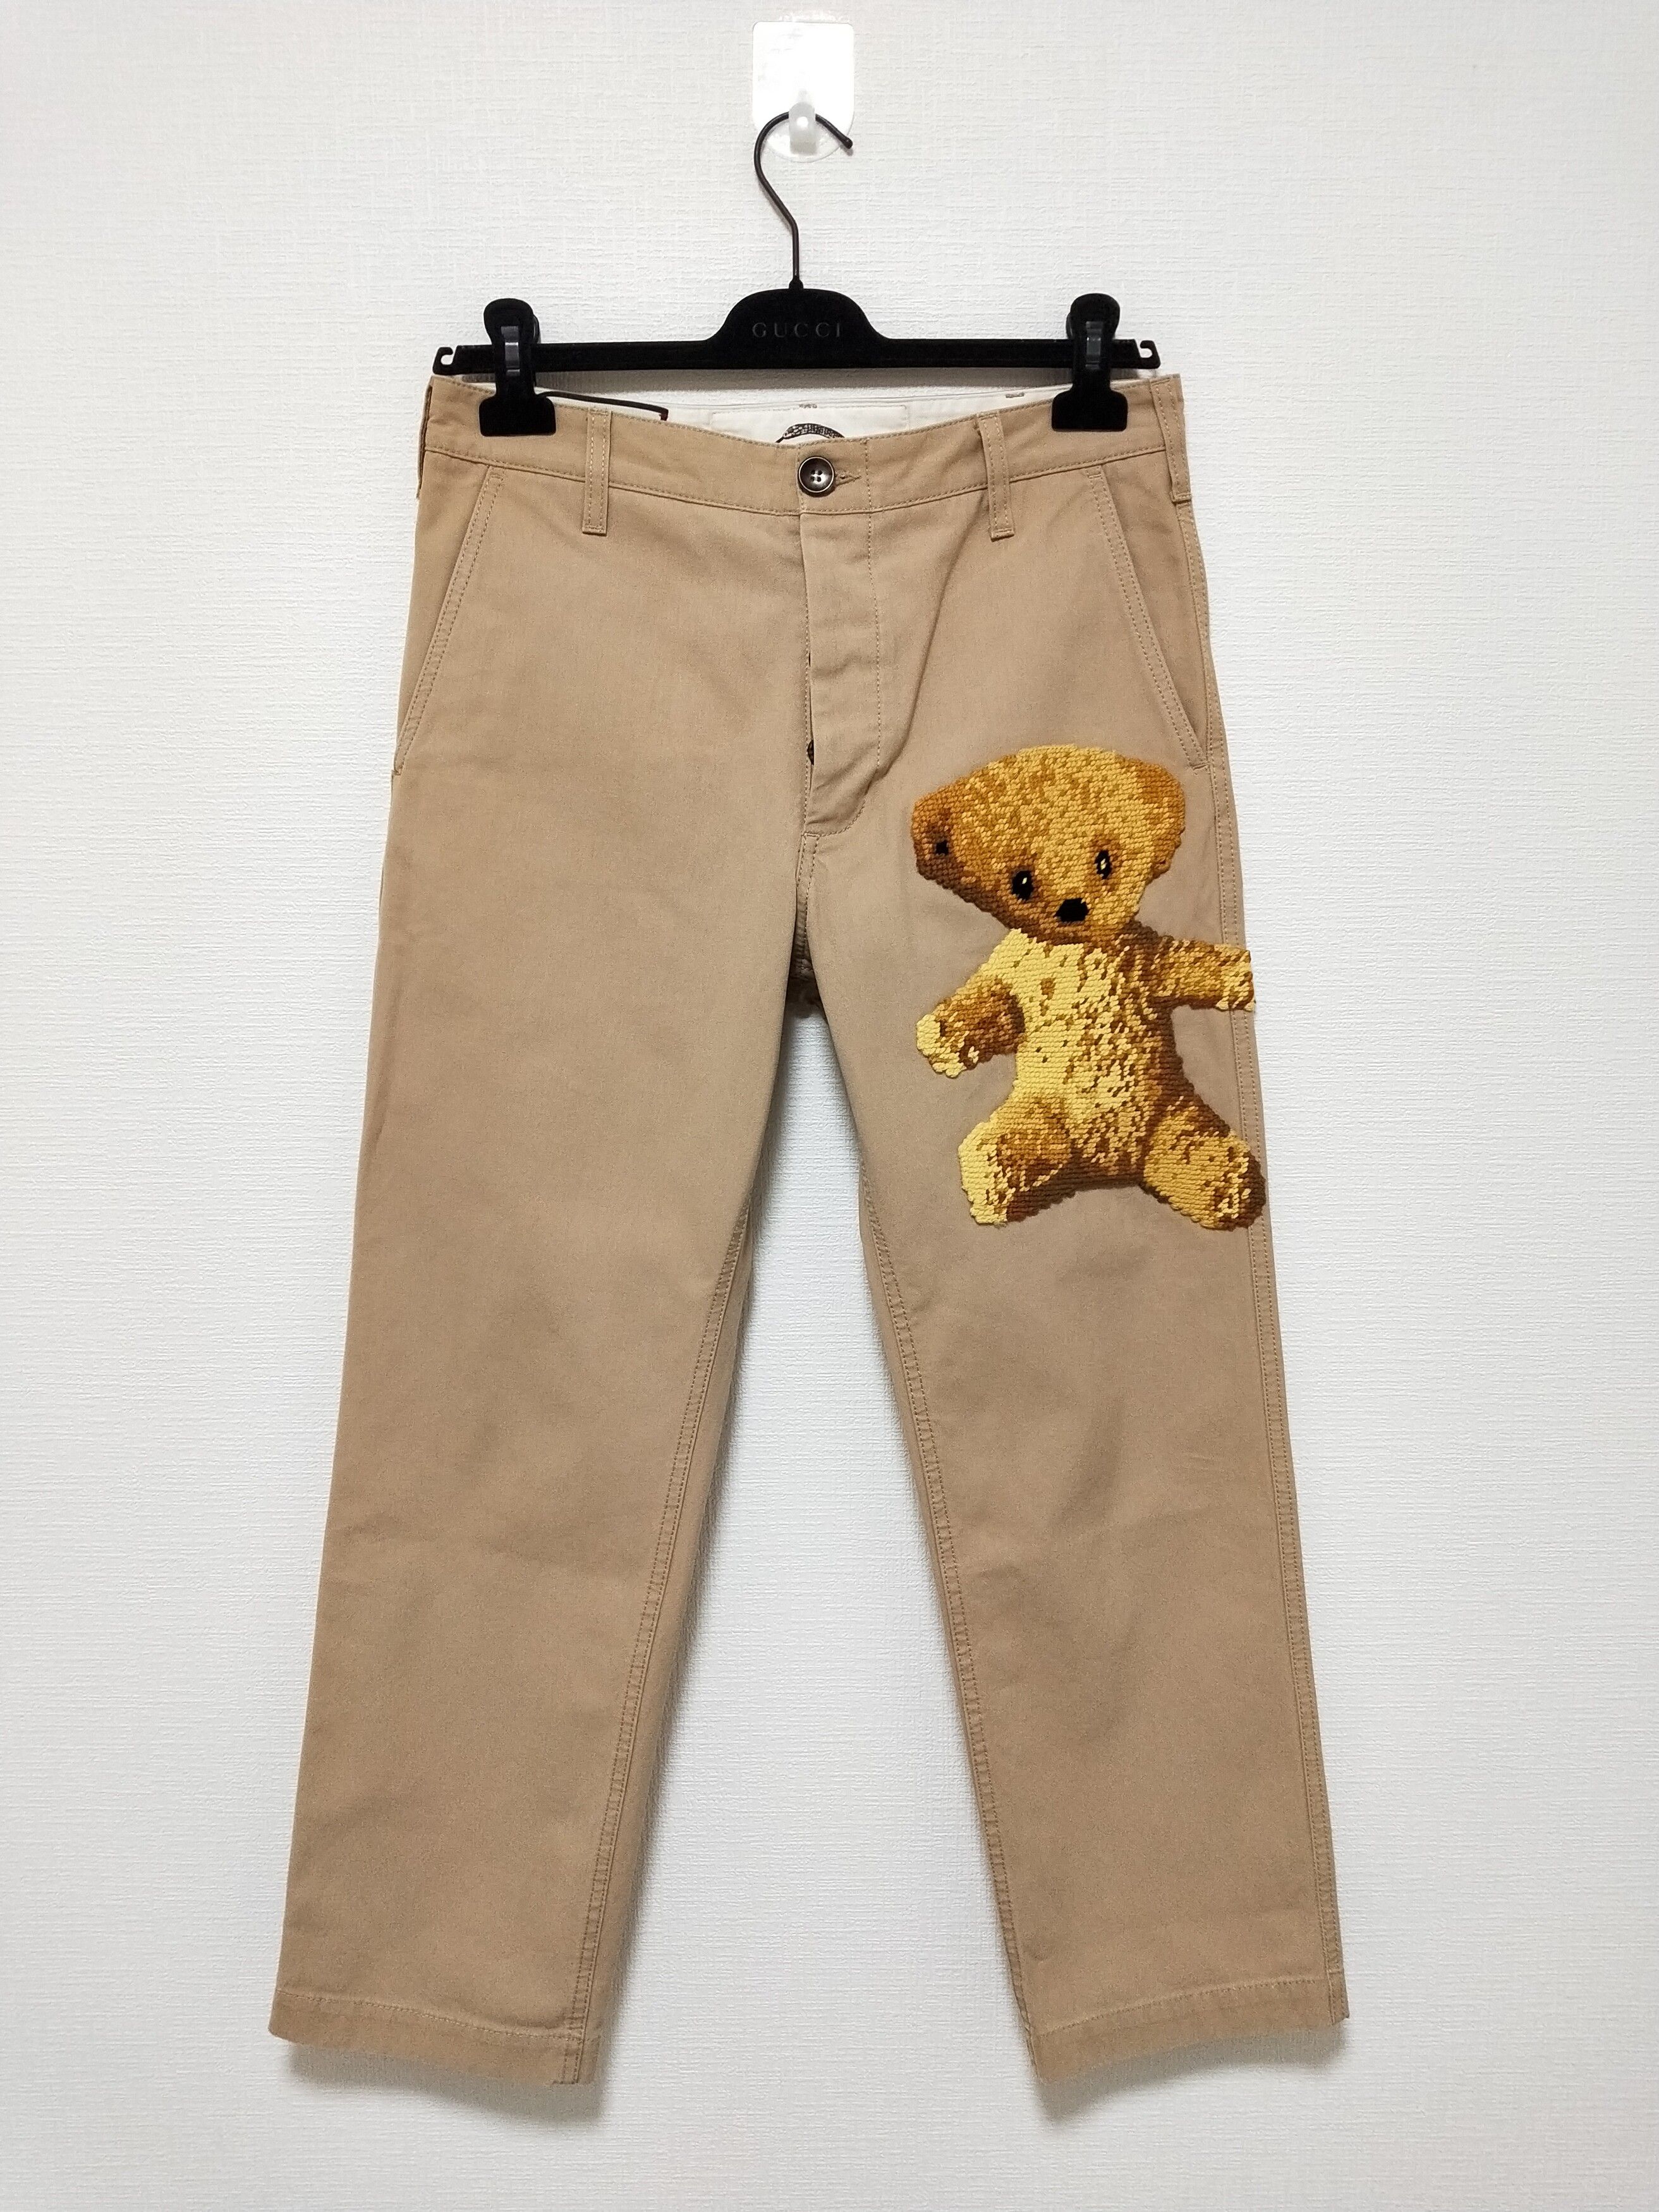 Gucci Teddy Bear Pants Size US 32 / EU 48 - 1 Preview